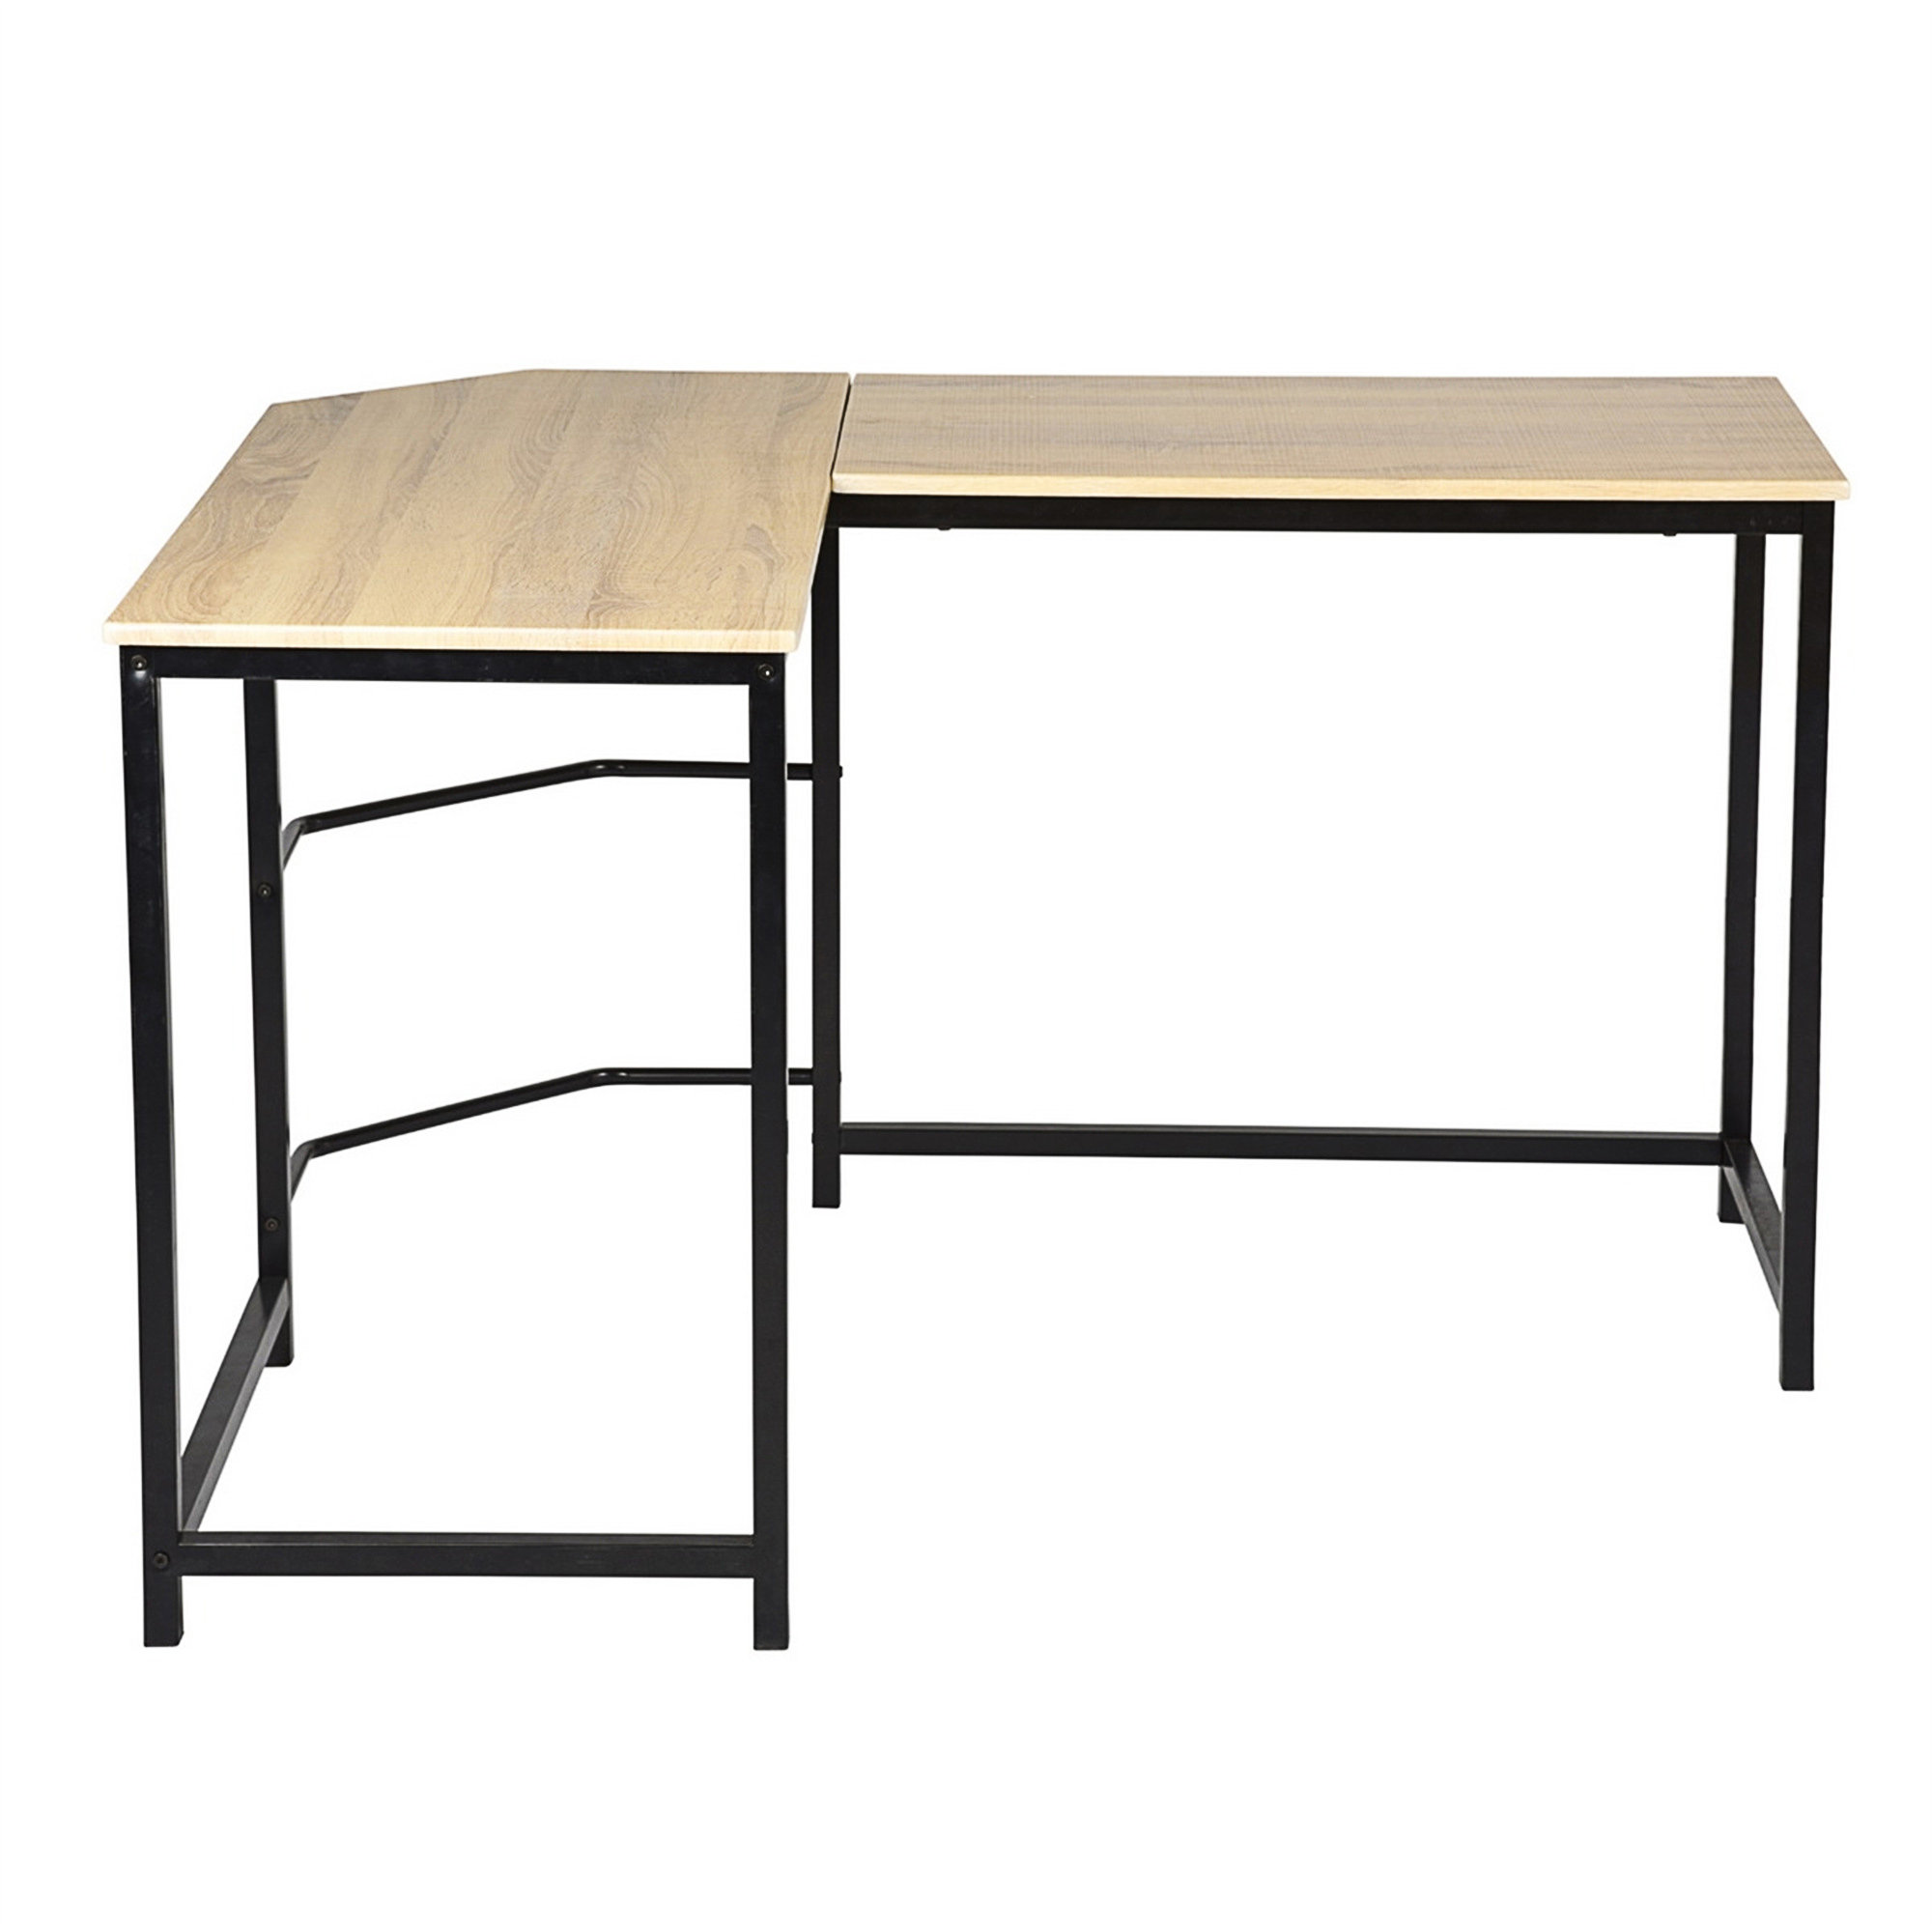 17 Stories Ajax L-shaped desk,home office desk,corner desk | Wayfair